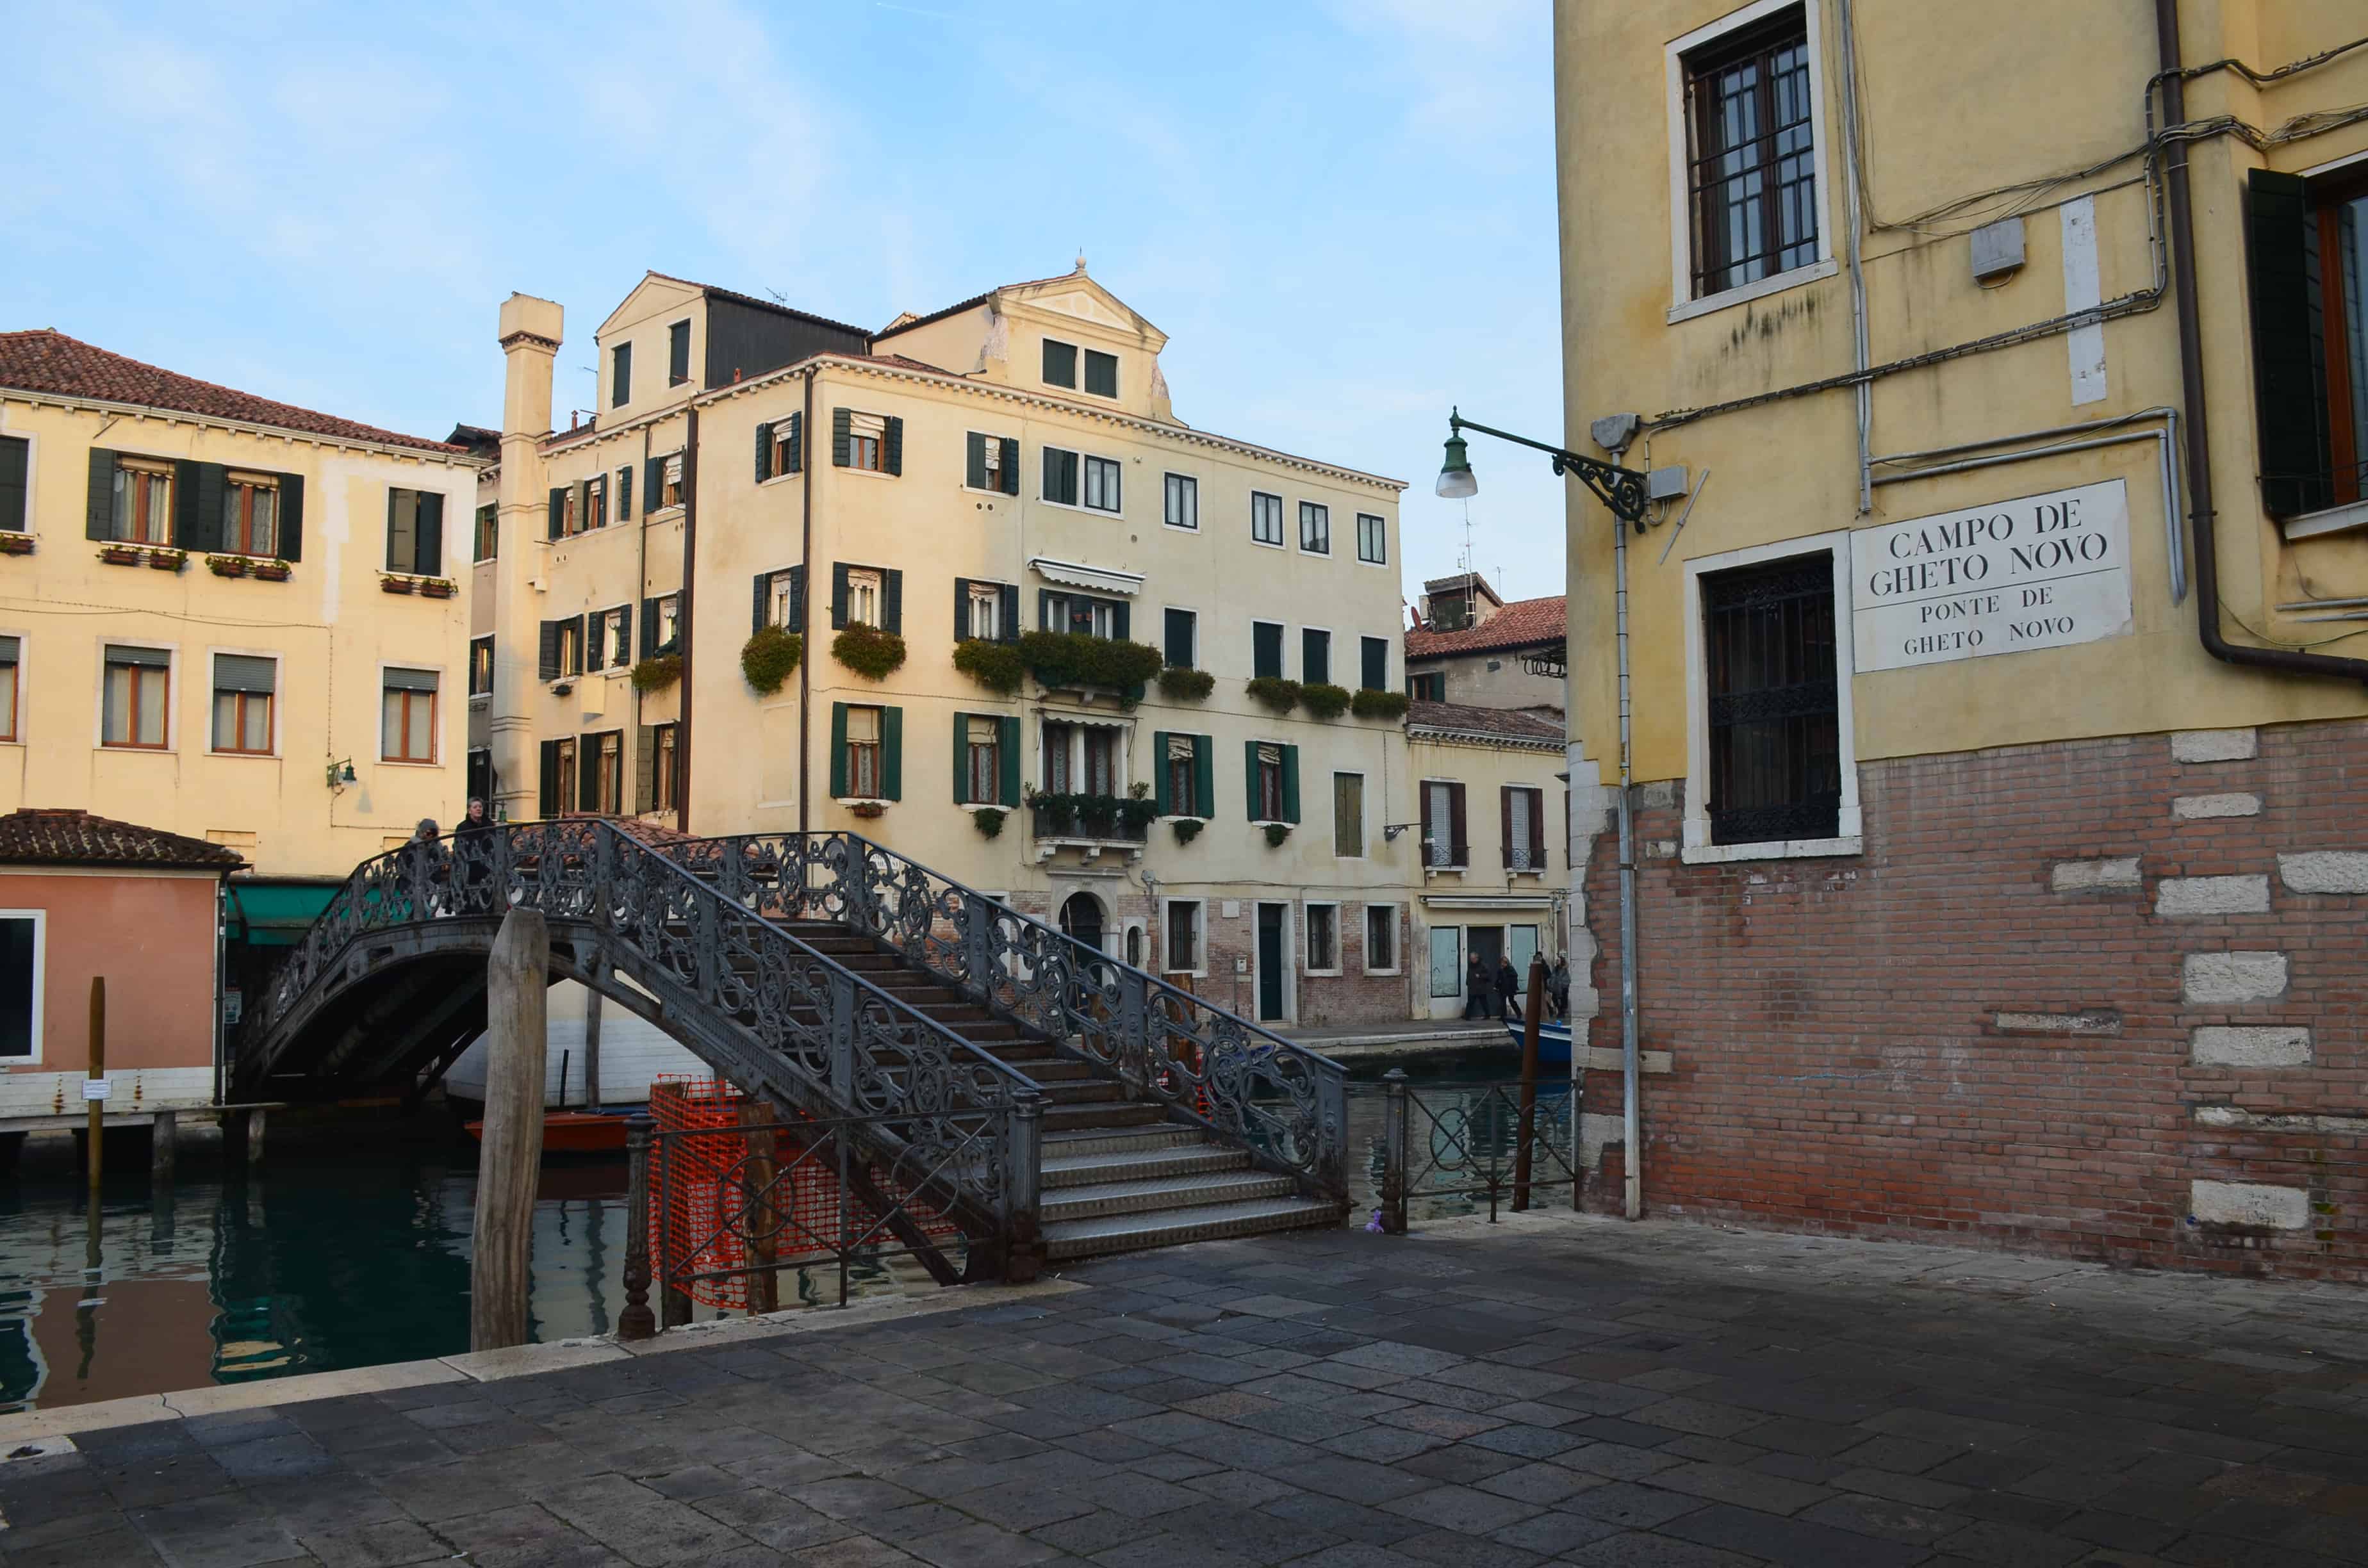 Ponte di Ghetto Nuovo in Venice, Italy